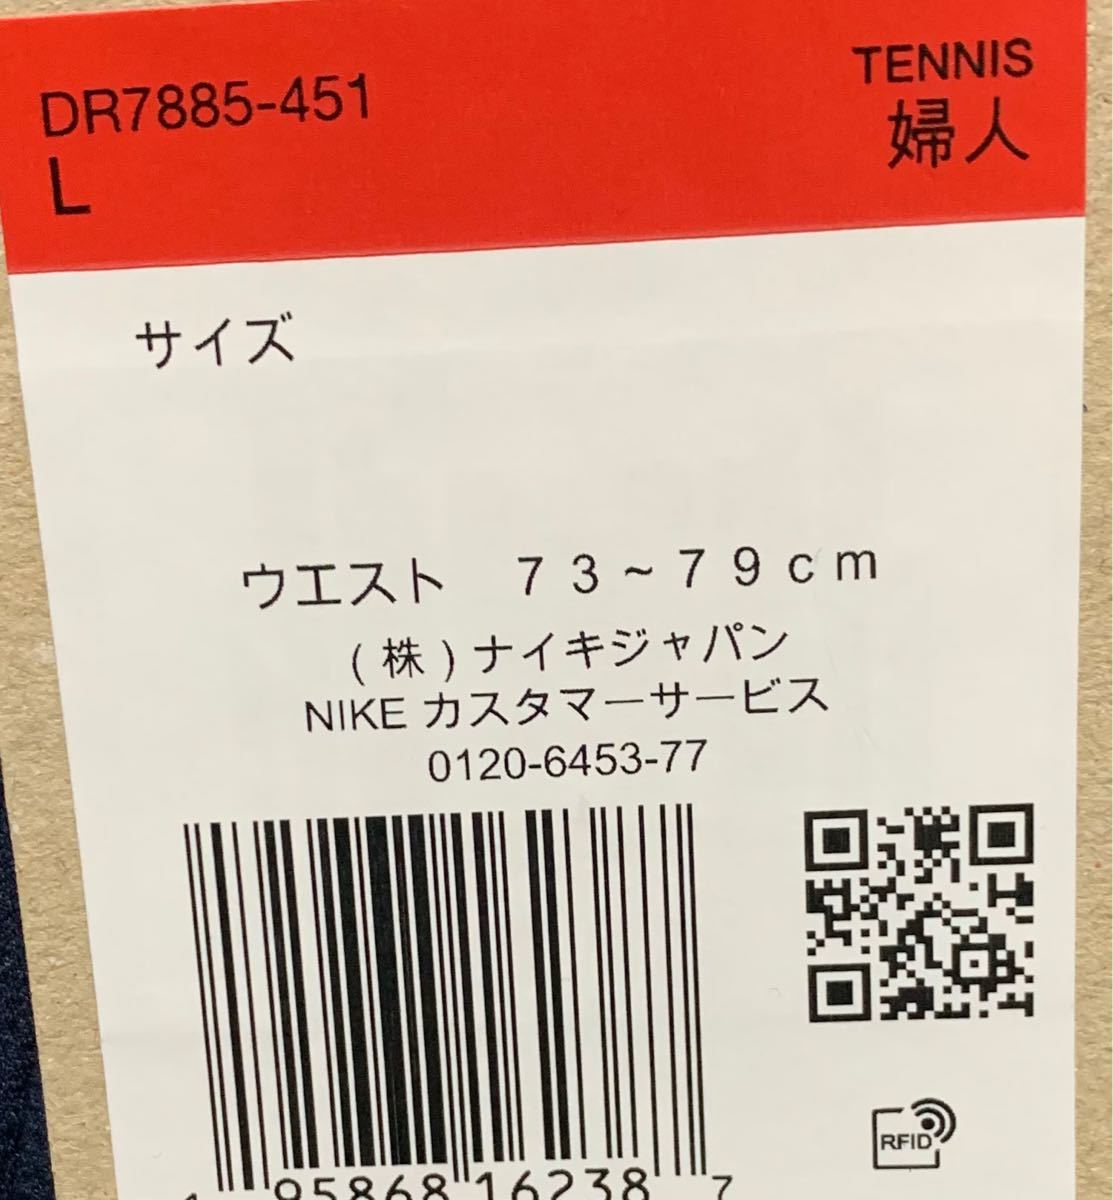 新品未使用 NIKE ナイキ スカート テニス ウェア ショートパンツ 大坂なおみ L